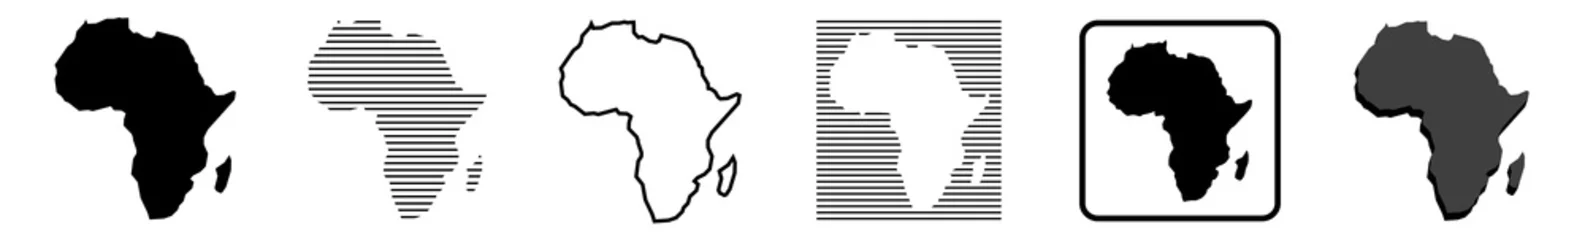 Tuinposter Afrika kaart   Afrikaanse grens   werelddeel   variaties © endstern